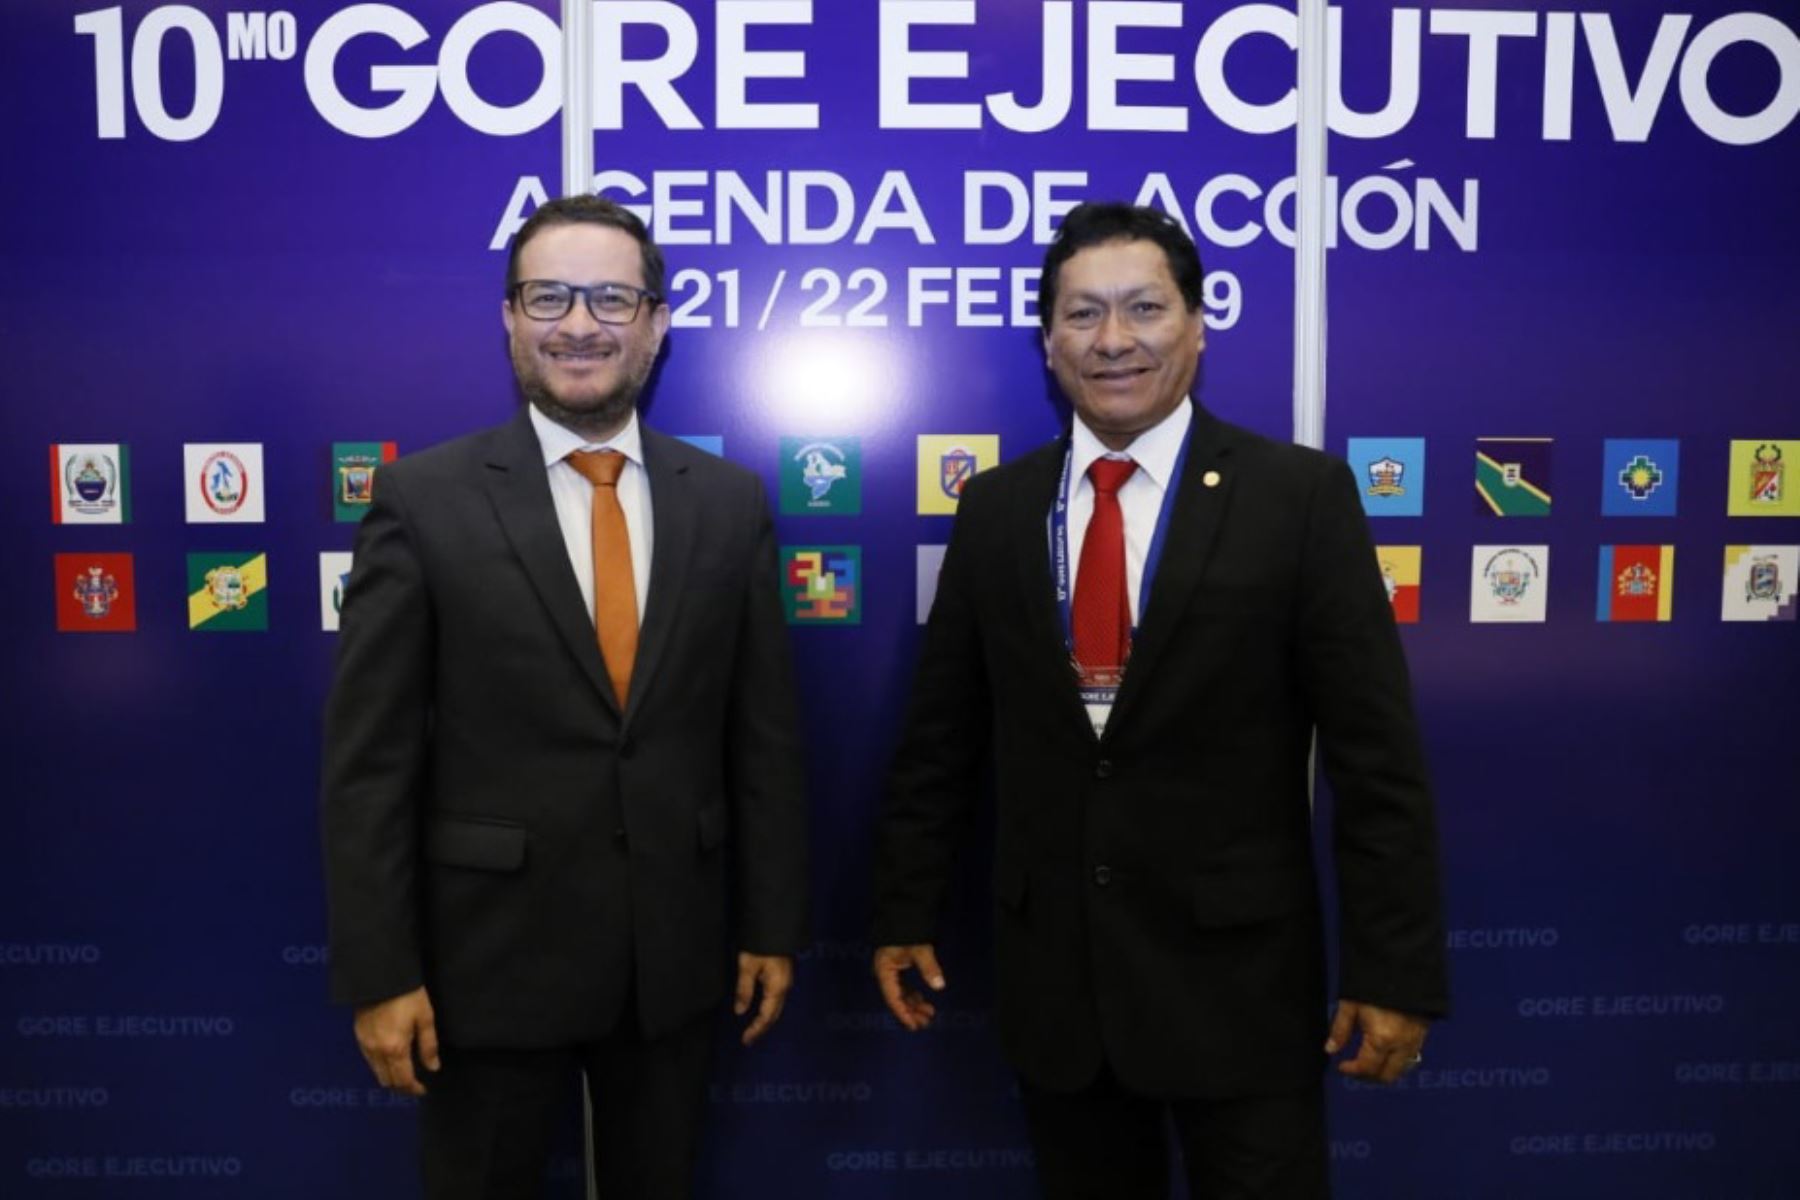 Durante su participación en la décima edición del Gore Ejecutivo, el gobernador Ochoa Sosa sostuvo un encuentro con el ministro de Comercio Exterior y Turismo, Edgar Vásquez